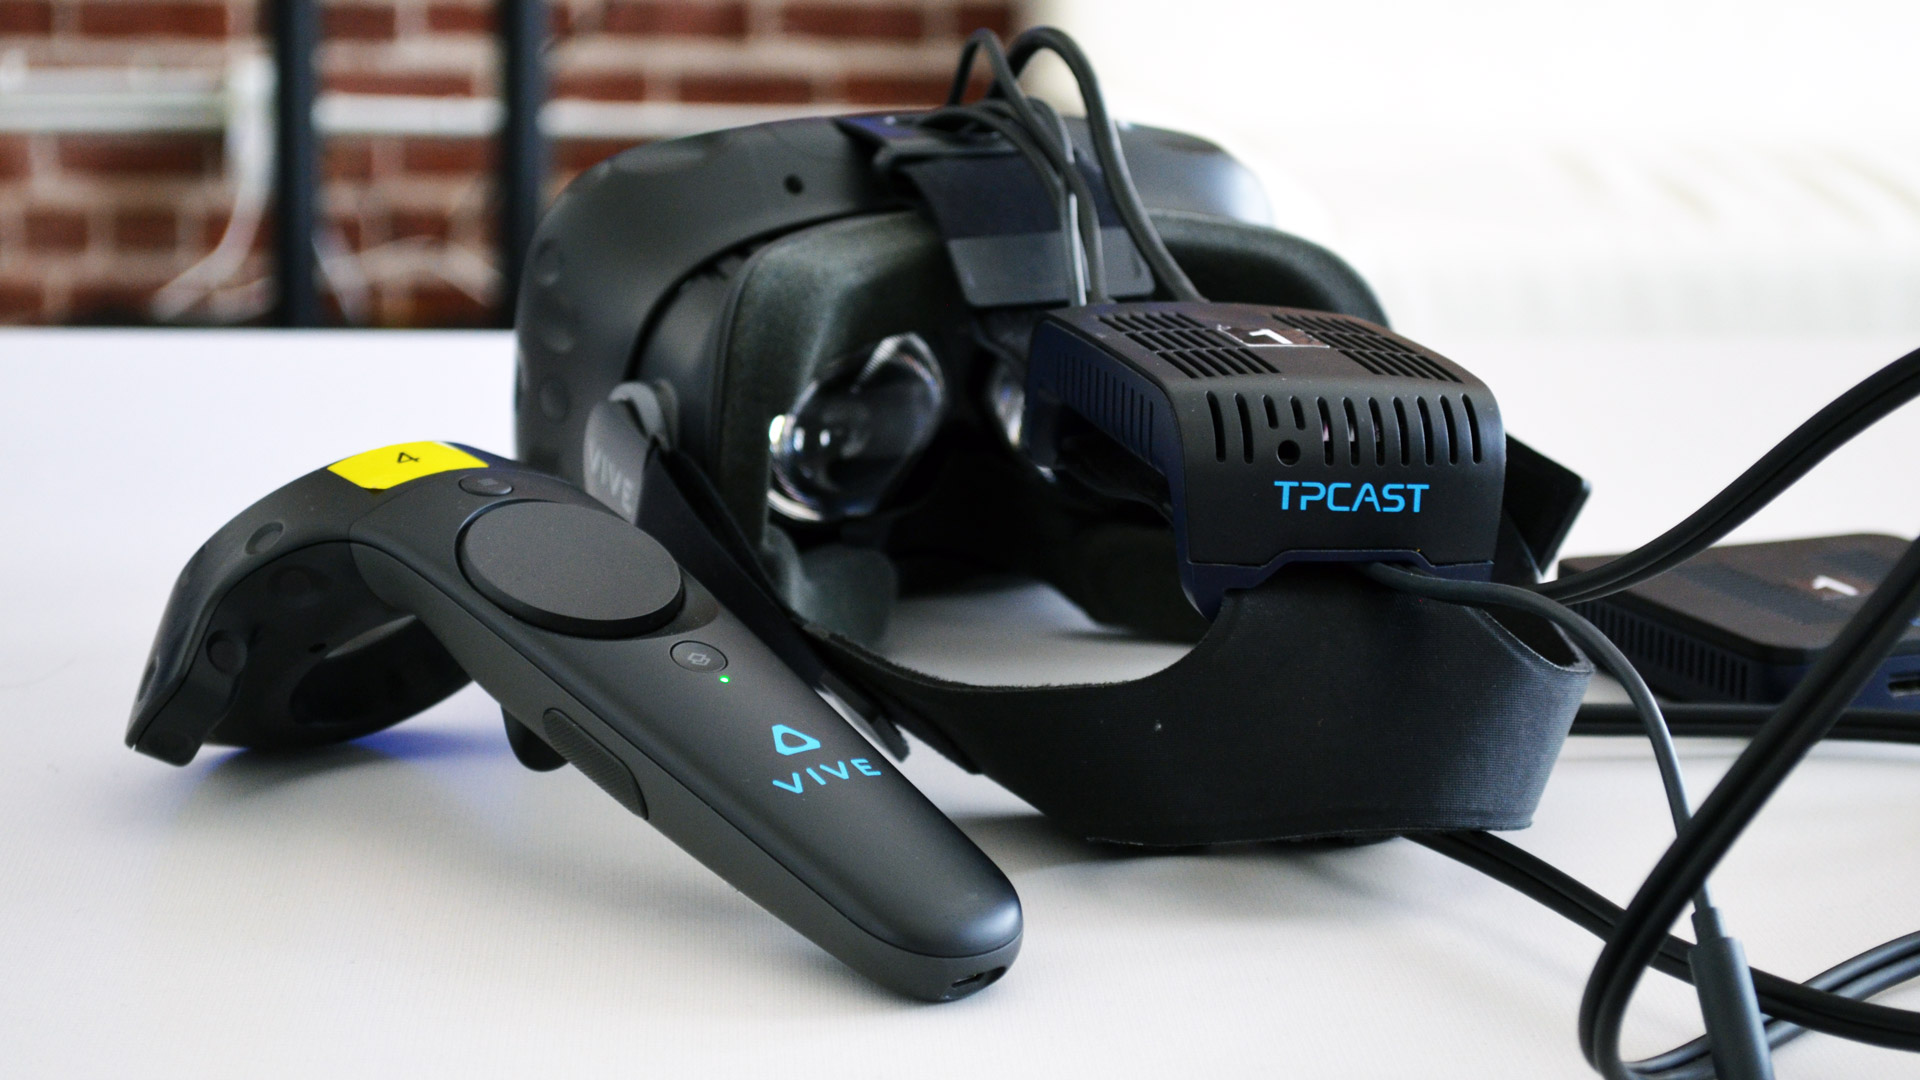 tpcast oculus rift wireless adapter